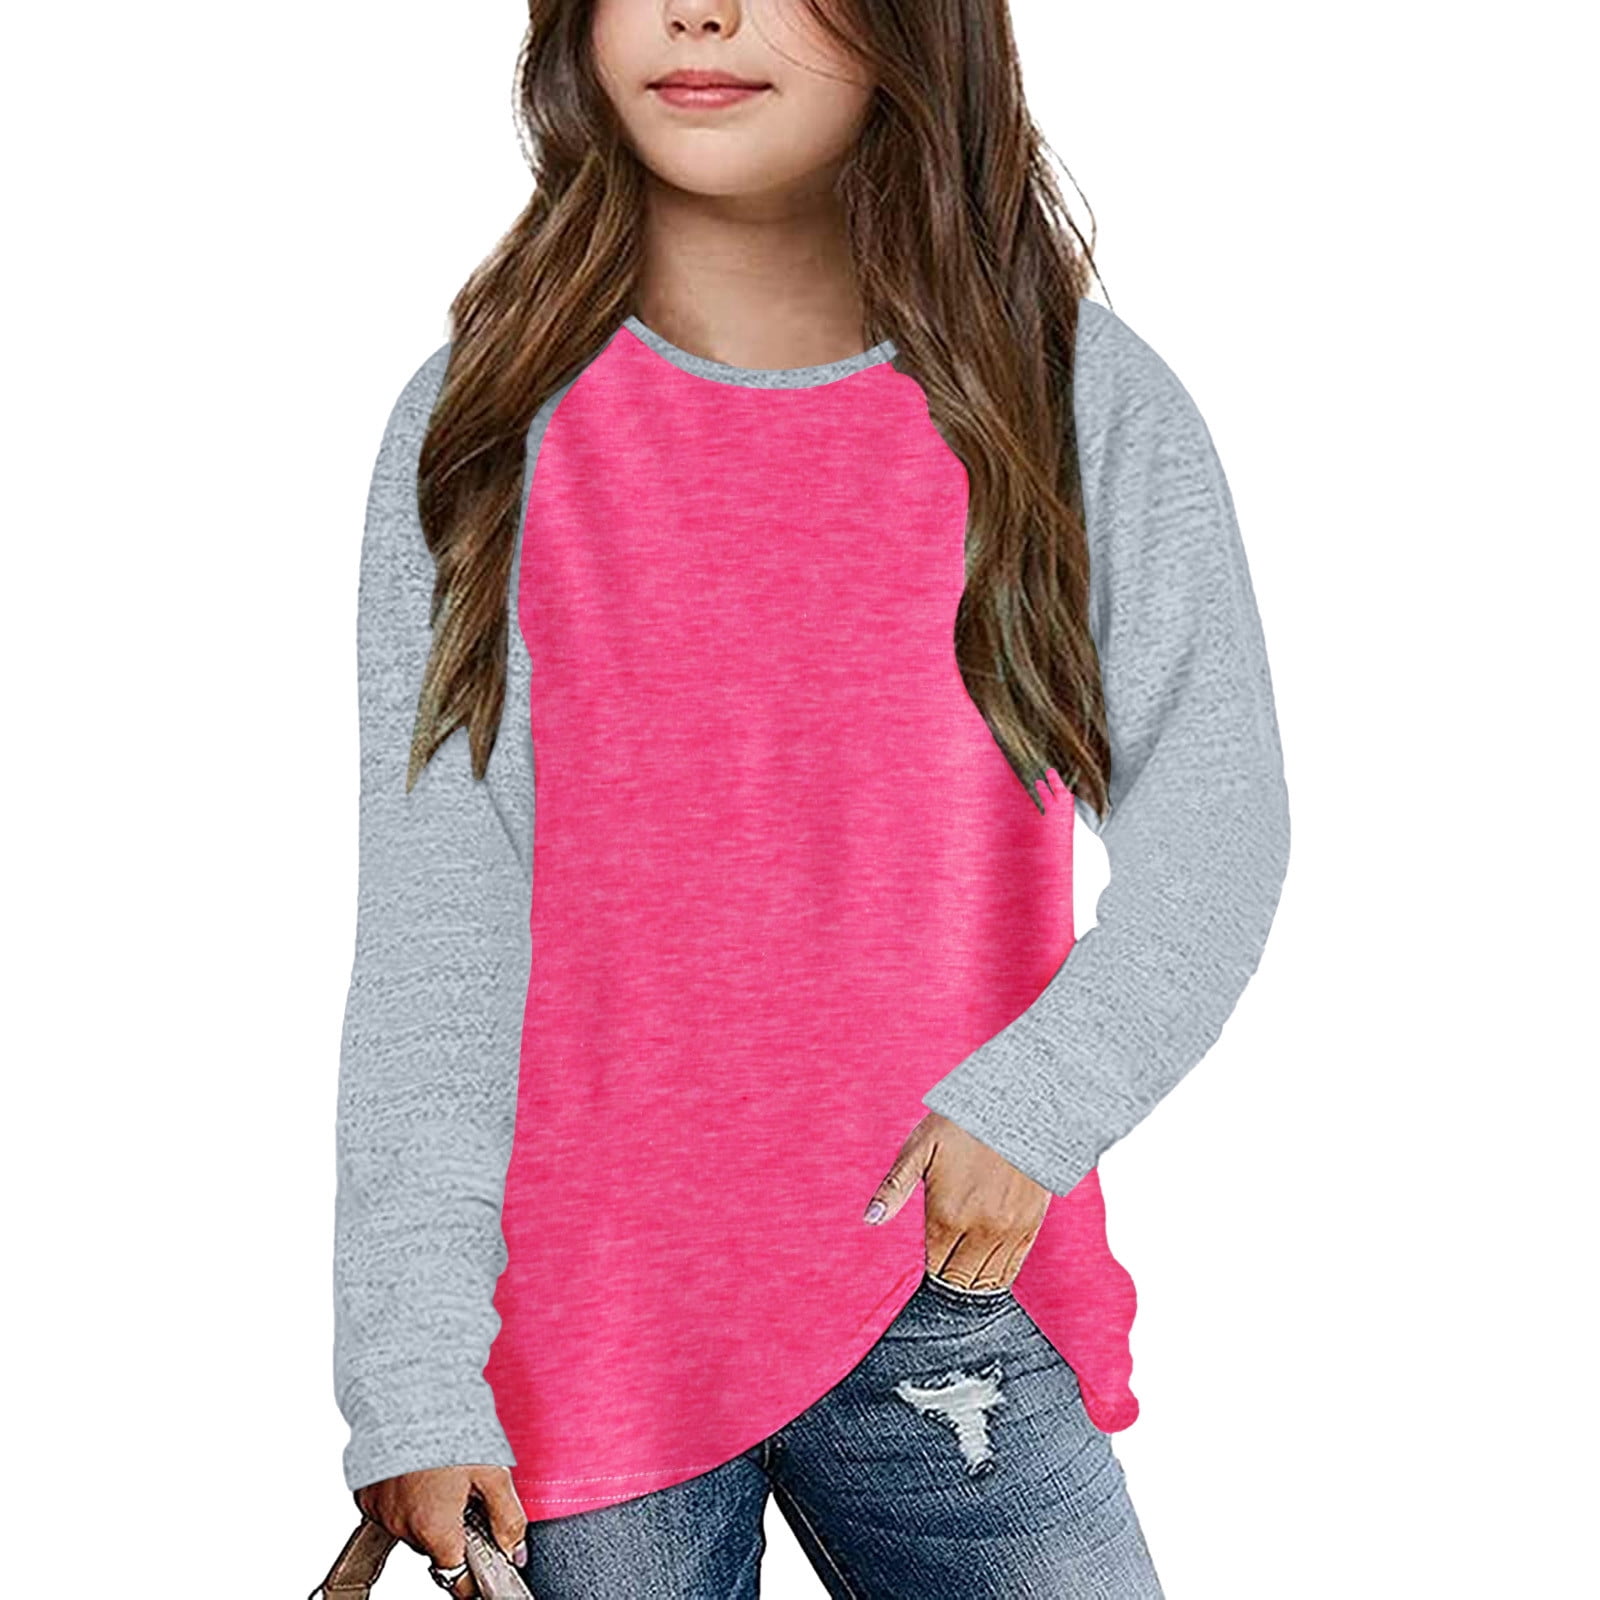 ZMHEGW Kids Sweater Little Girls Casual Long Sleeve Raglan Sleeve T ...